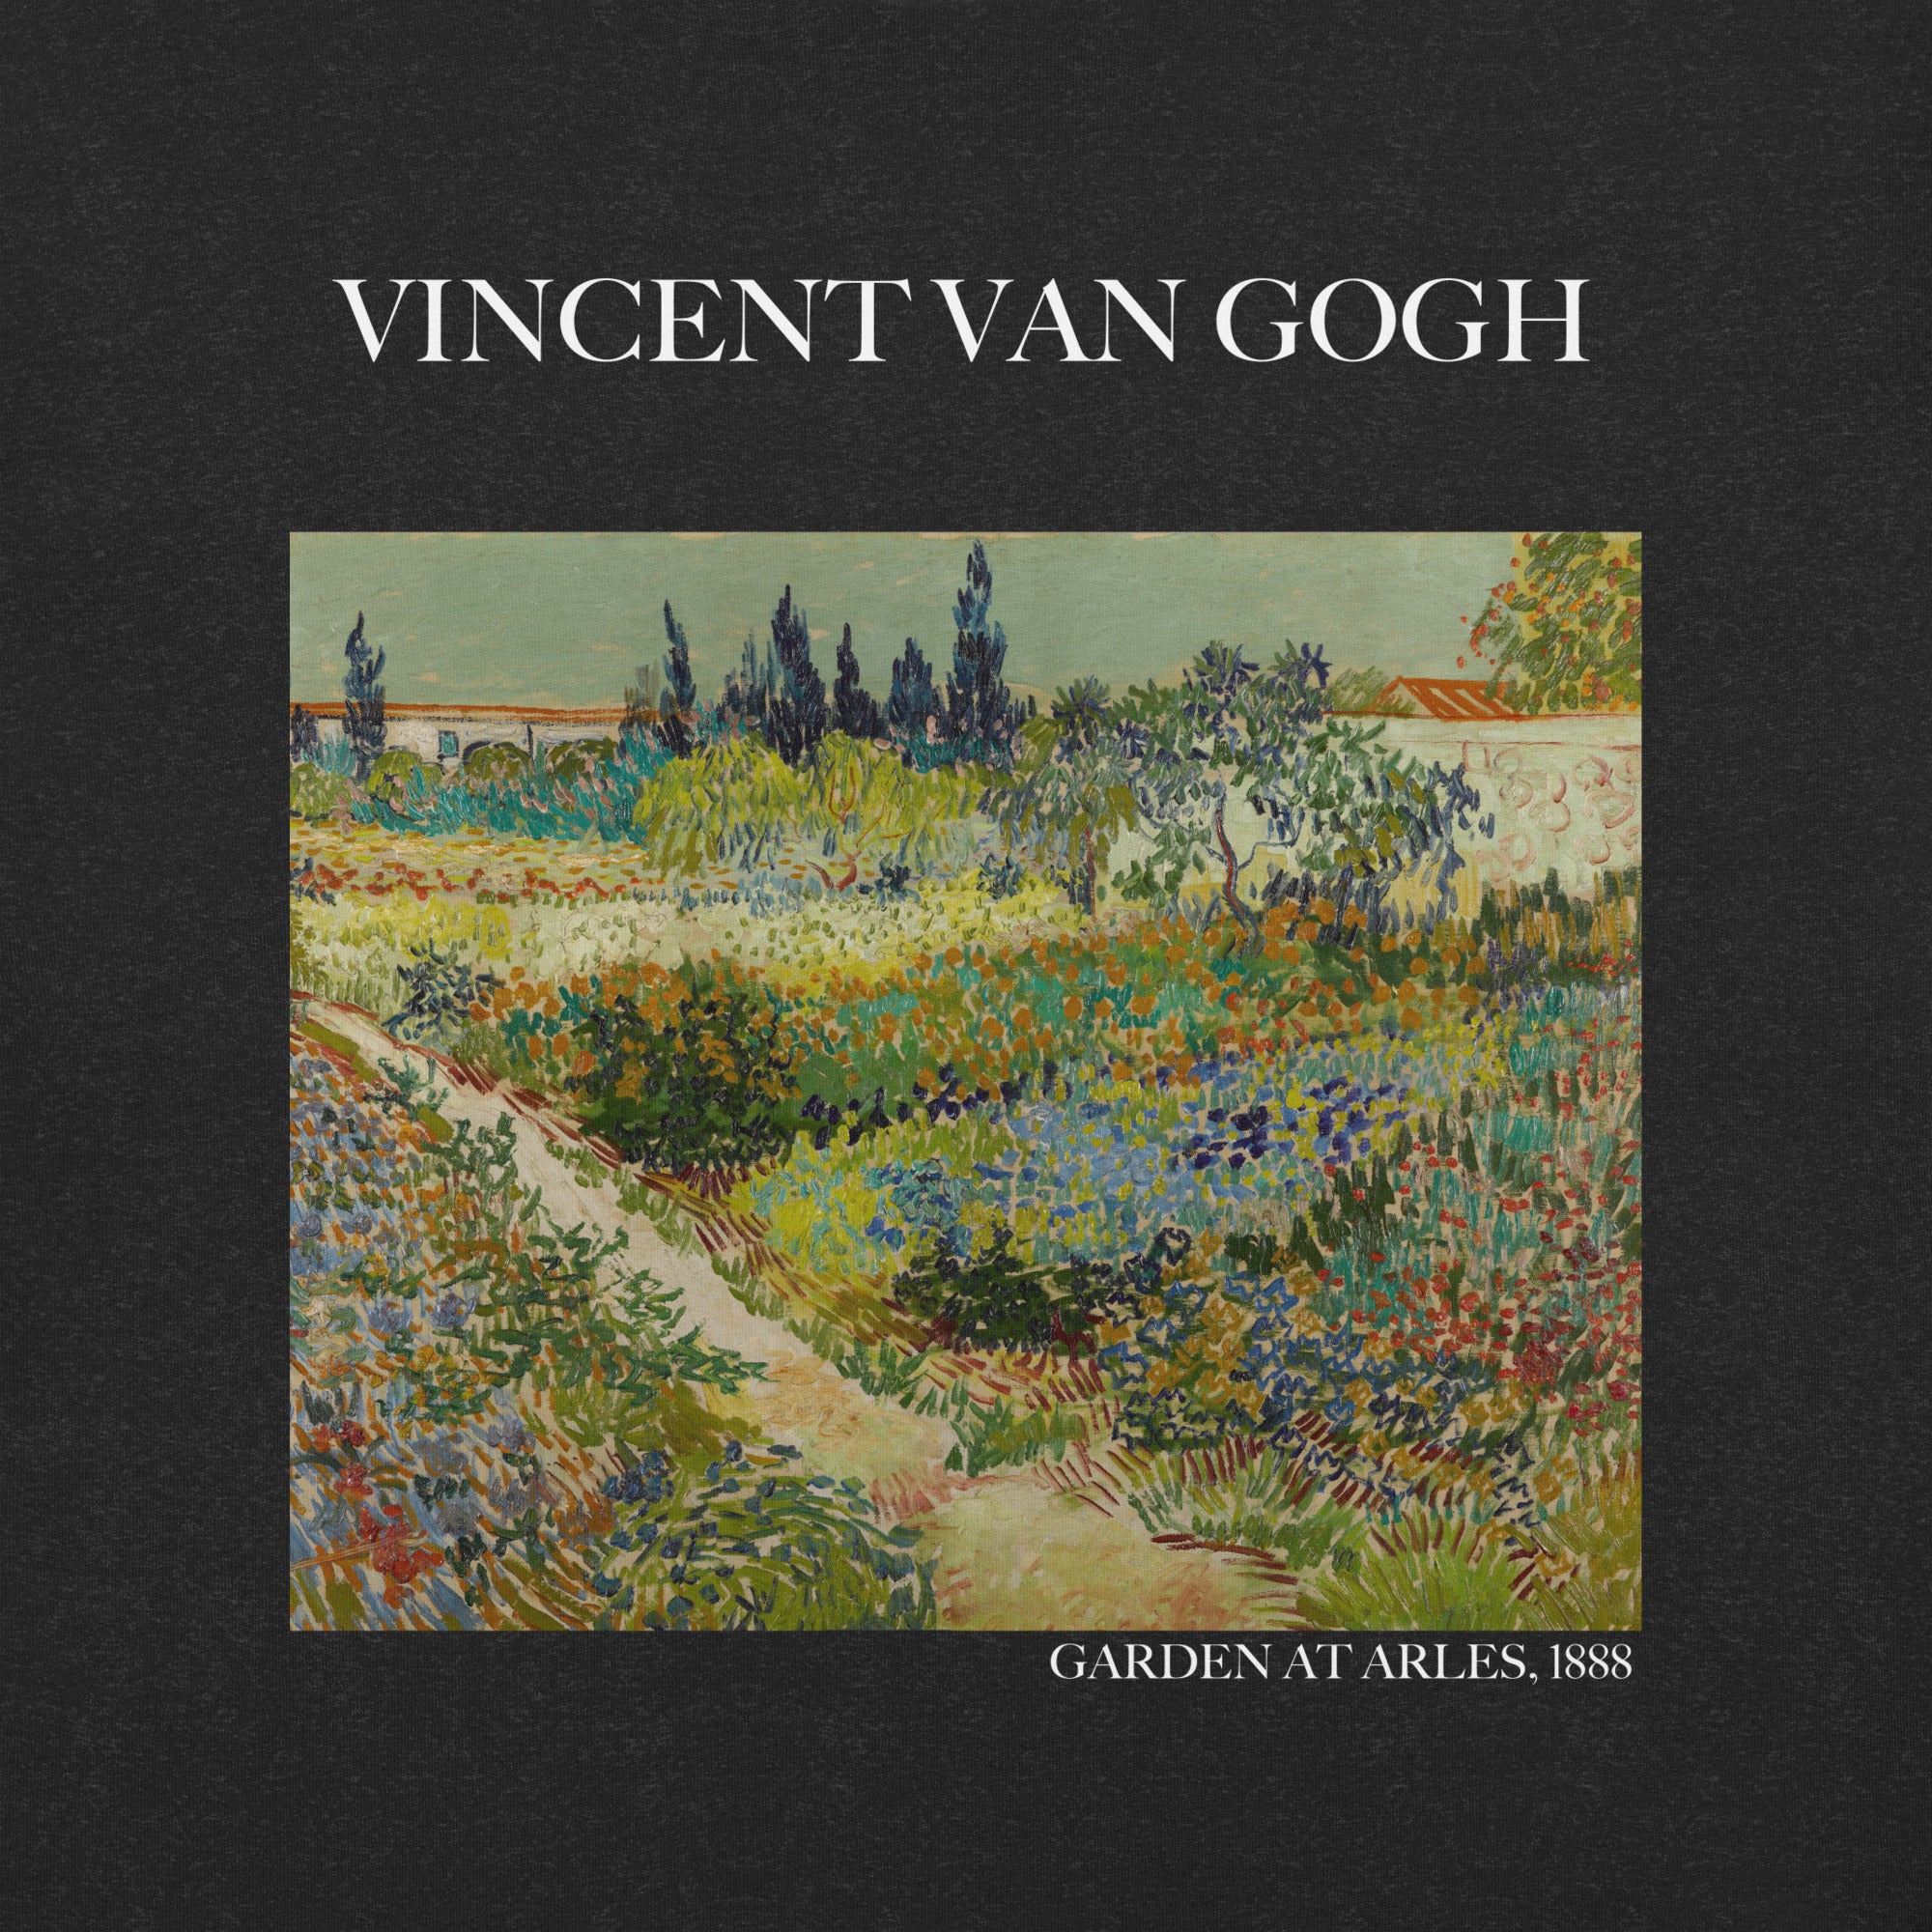 T-Shirt mit berühmtem Gemälde „Garten in Arles“ von Vincent van Gogh | Unisex-T-Shirt im klassischen Kunststil